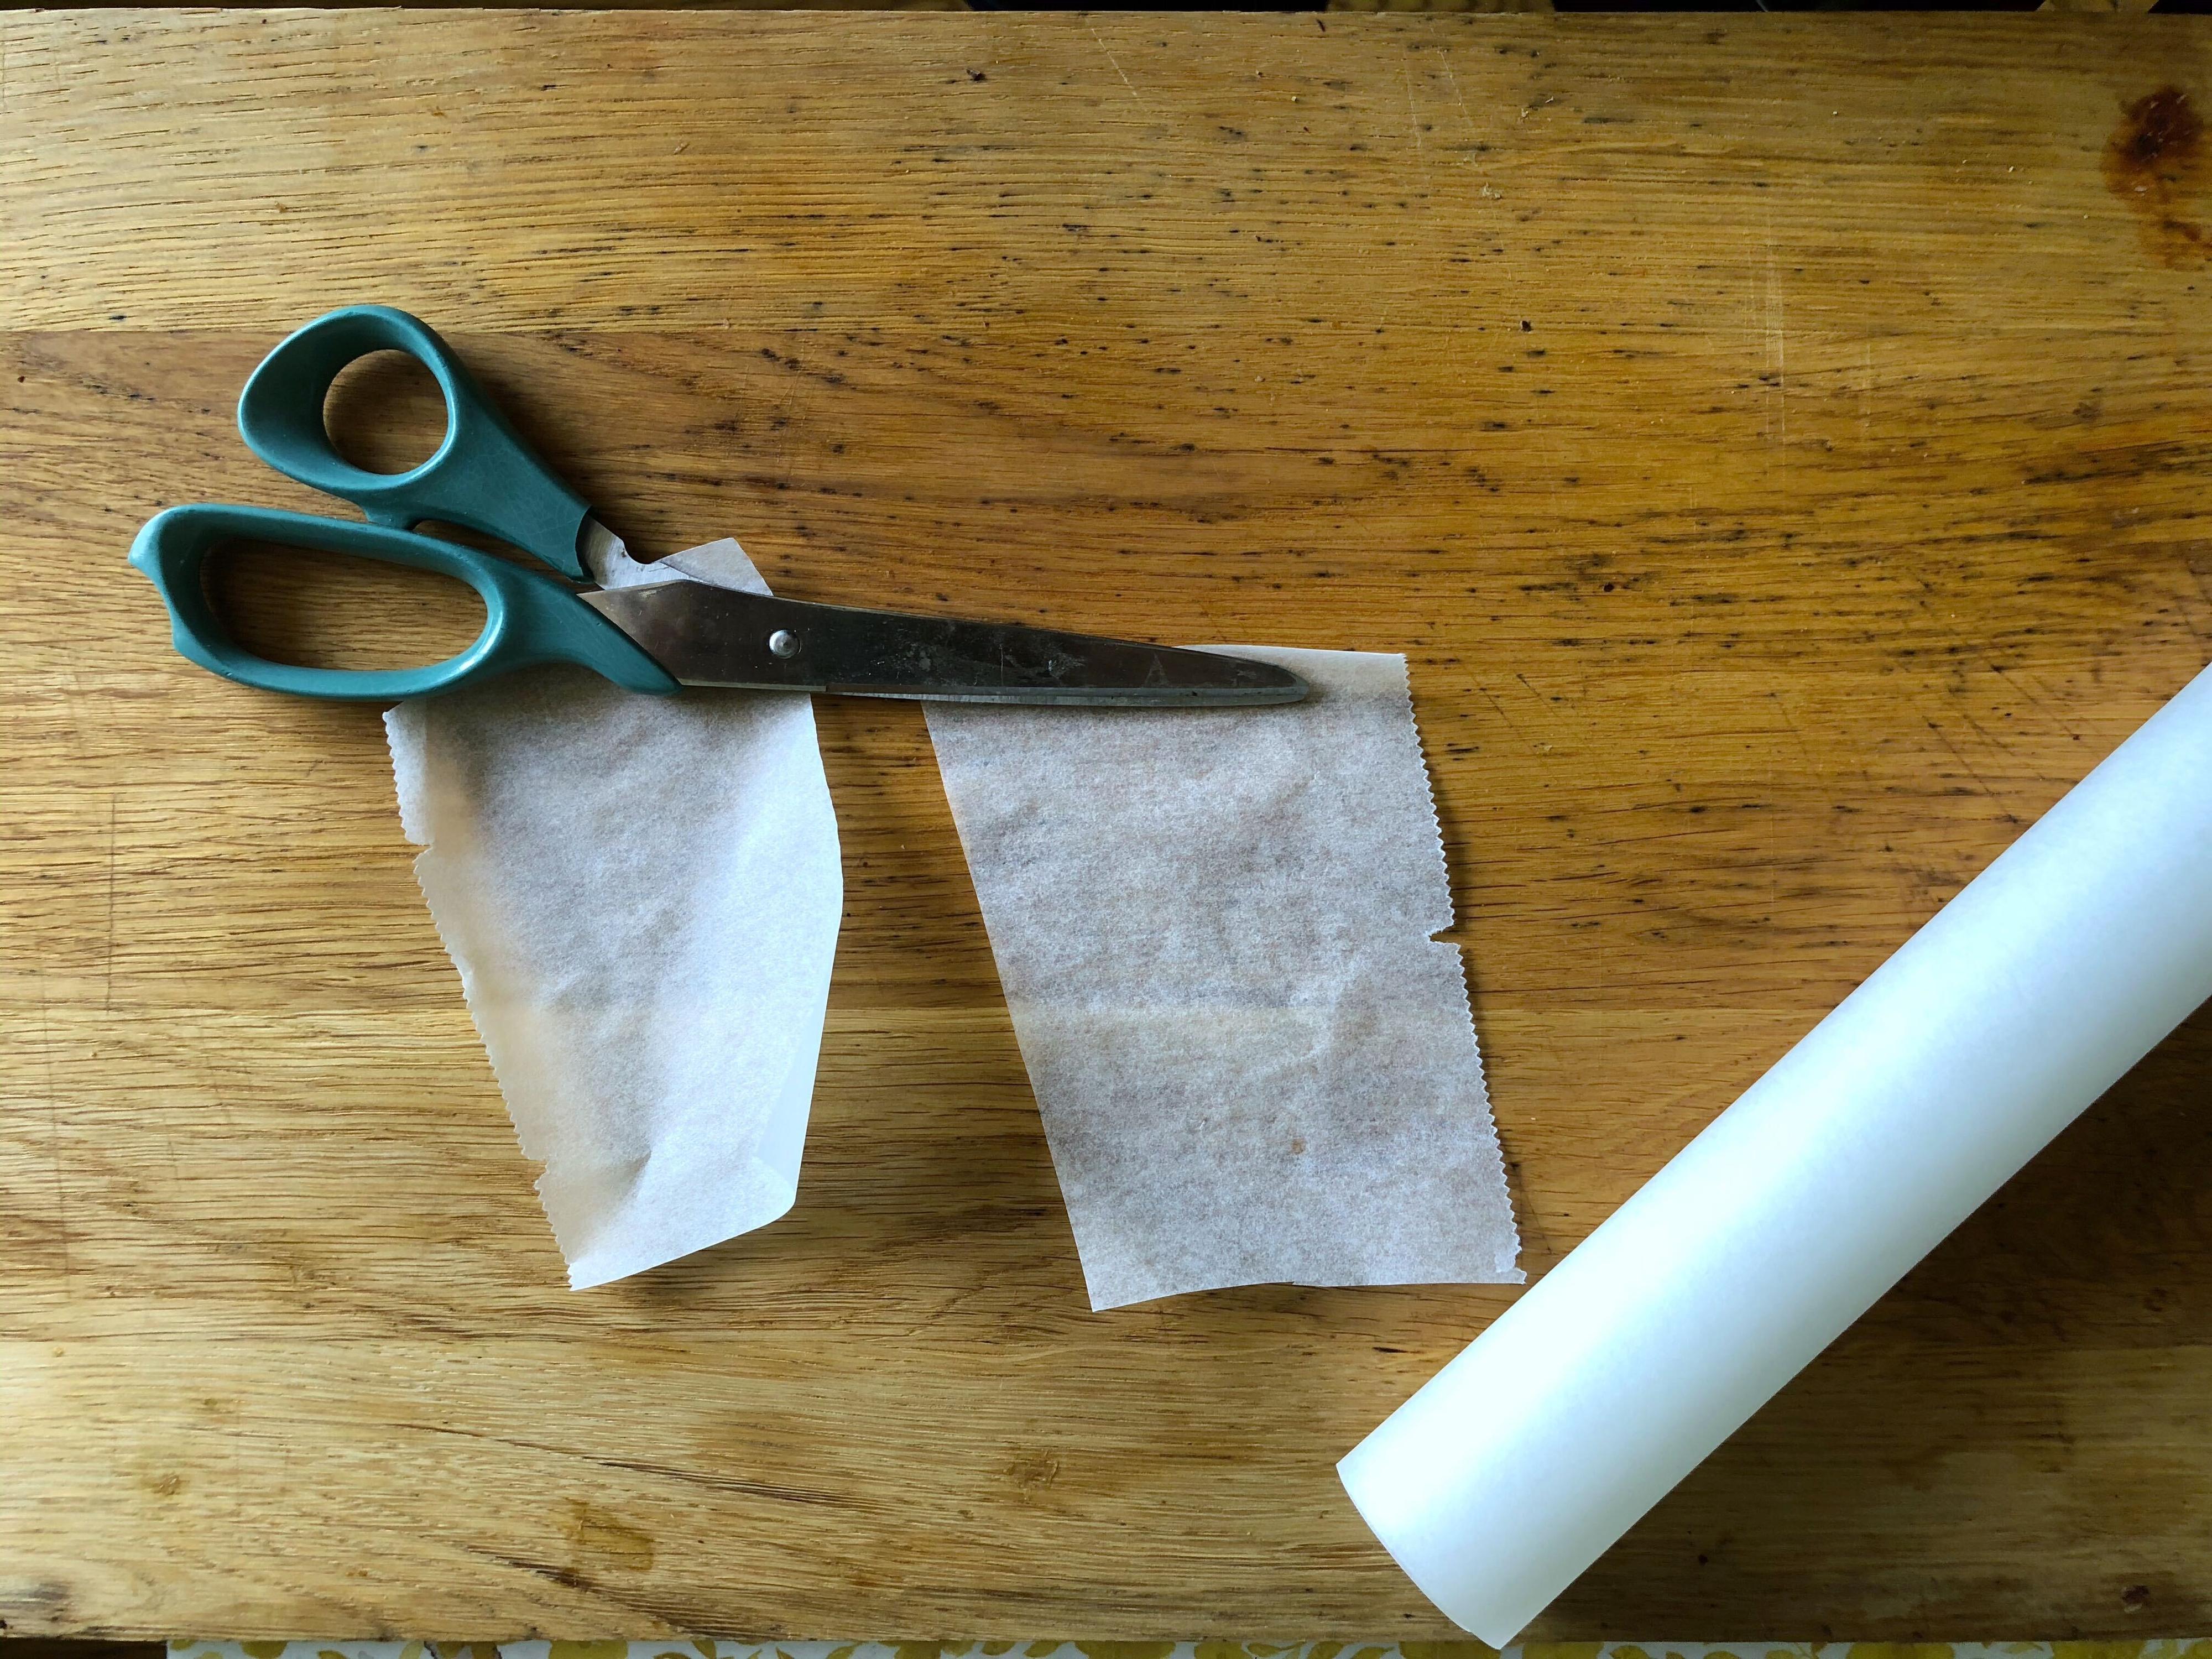 BAKEPAPIR: Husk å bruke bakepapir og ikke smørpapir, så får du enkelt sjokoladen til å slippe papiret etterpå.